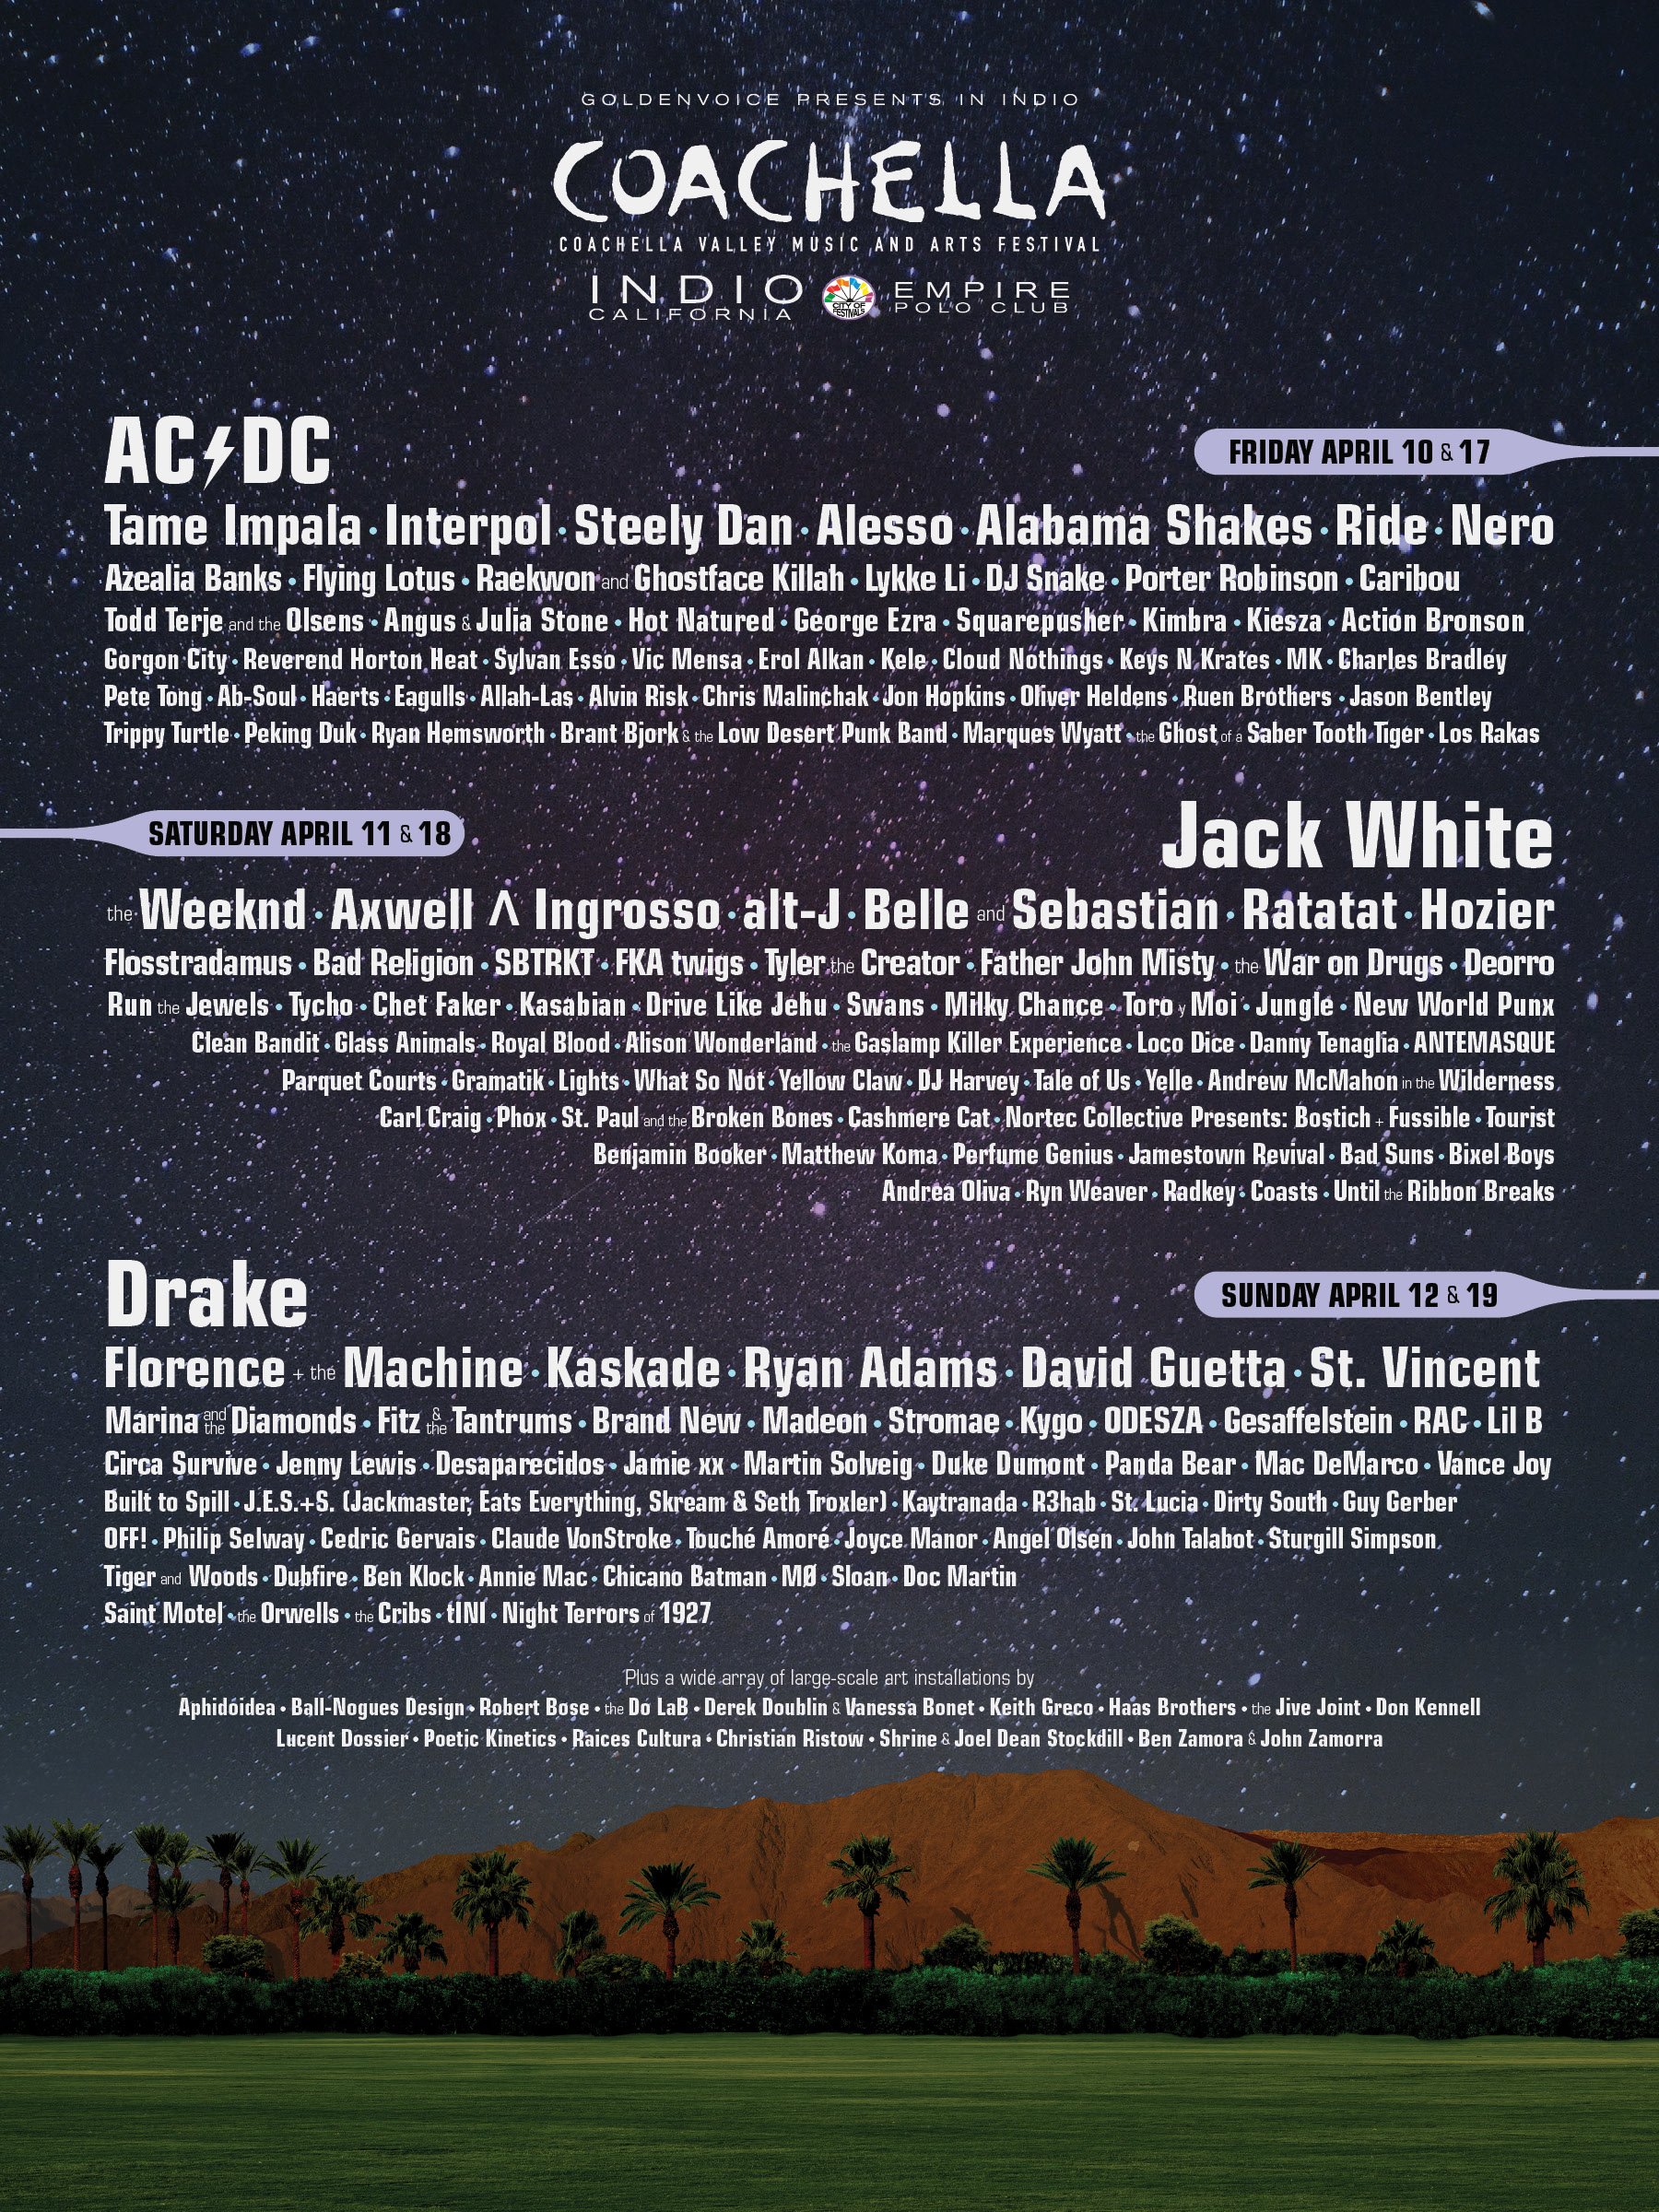 Coachella - Music And Arts Festival 